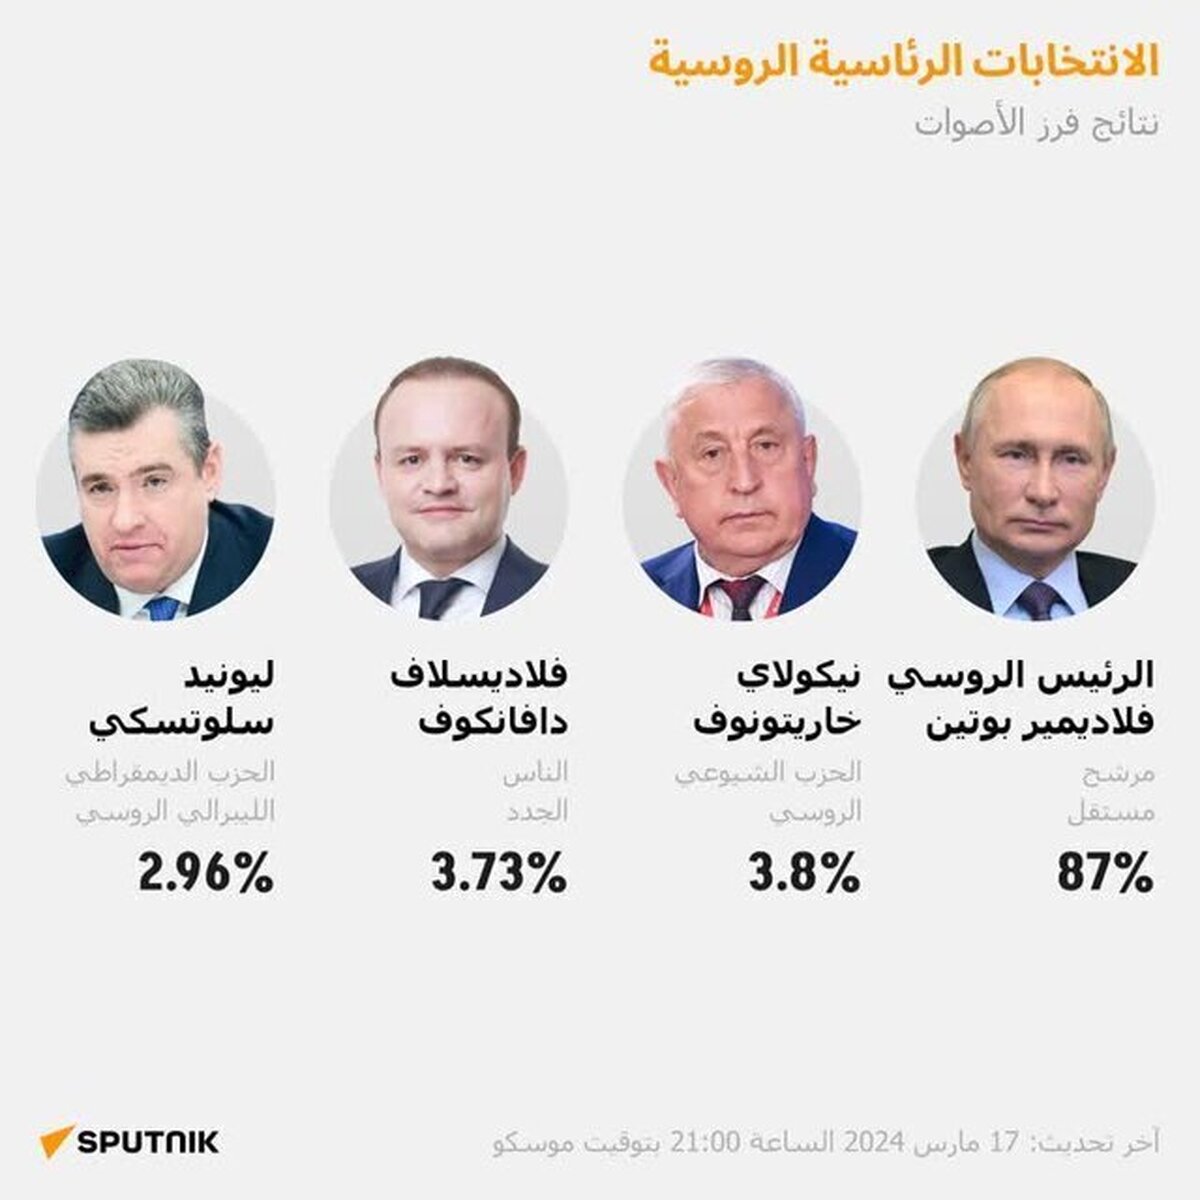 انتخابات روسیه؛ پیروزیِ پوتین با کسب ۸۷ درصد آرا قطعی شد